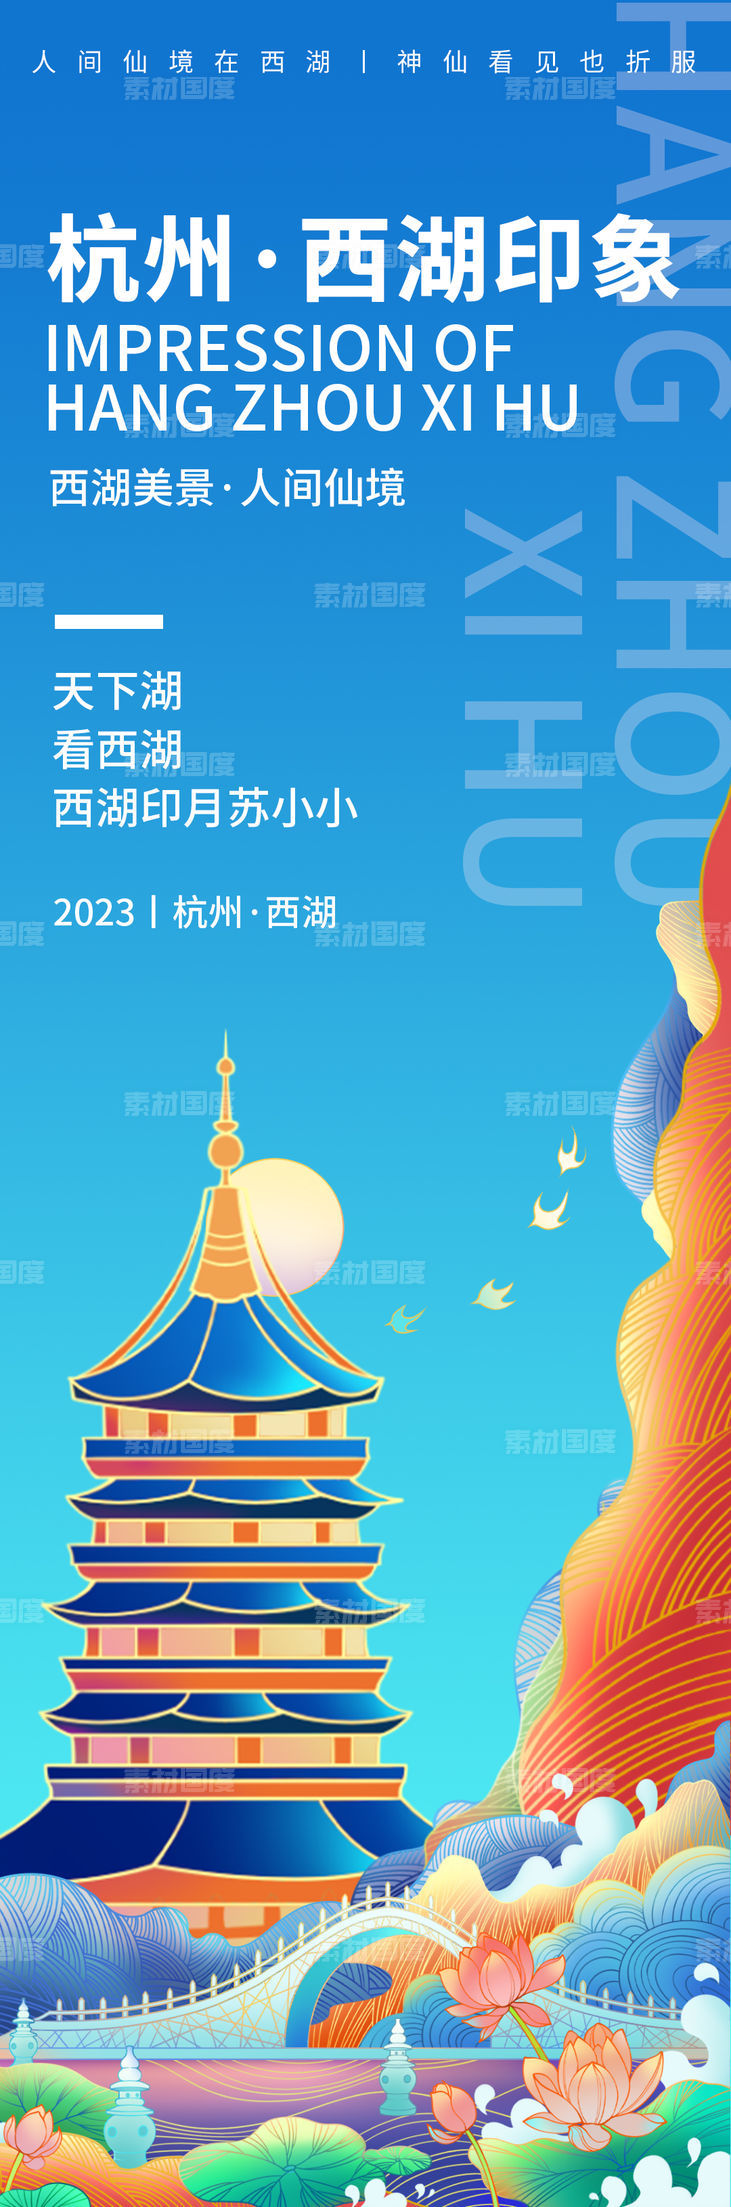 杭州西湖印象旅游海报